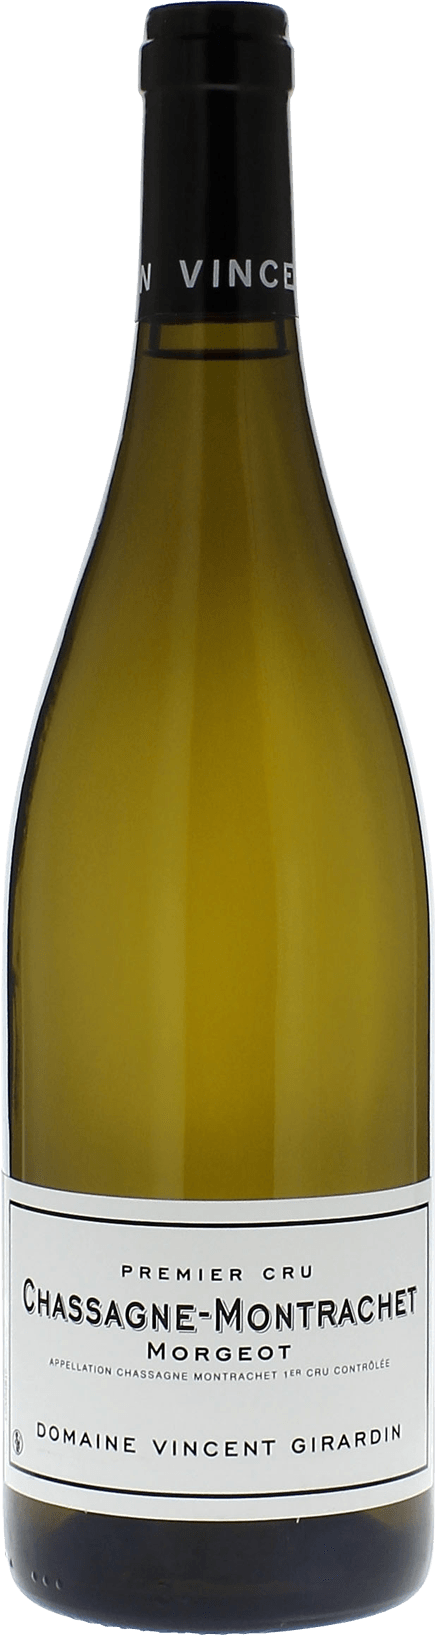 Chassagne montrachet 1er cru morgeot 2017 Domaine GIRARDIN Vincent, Bourgogne blanc